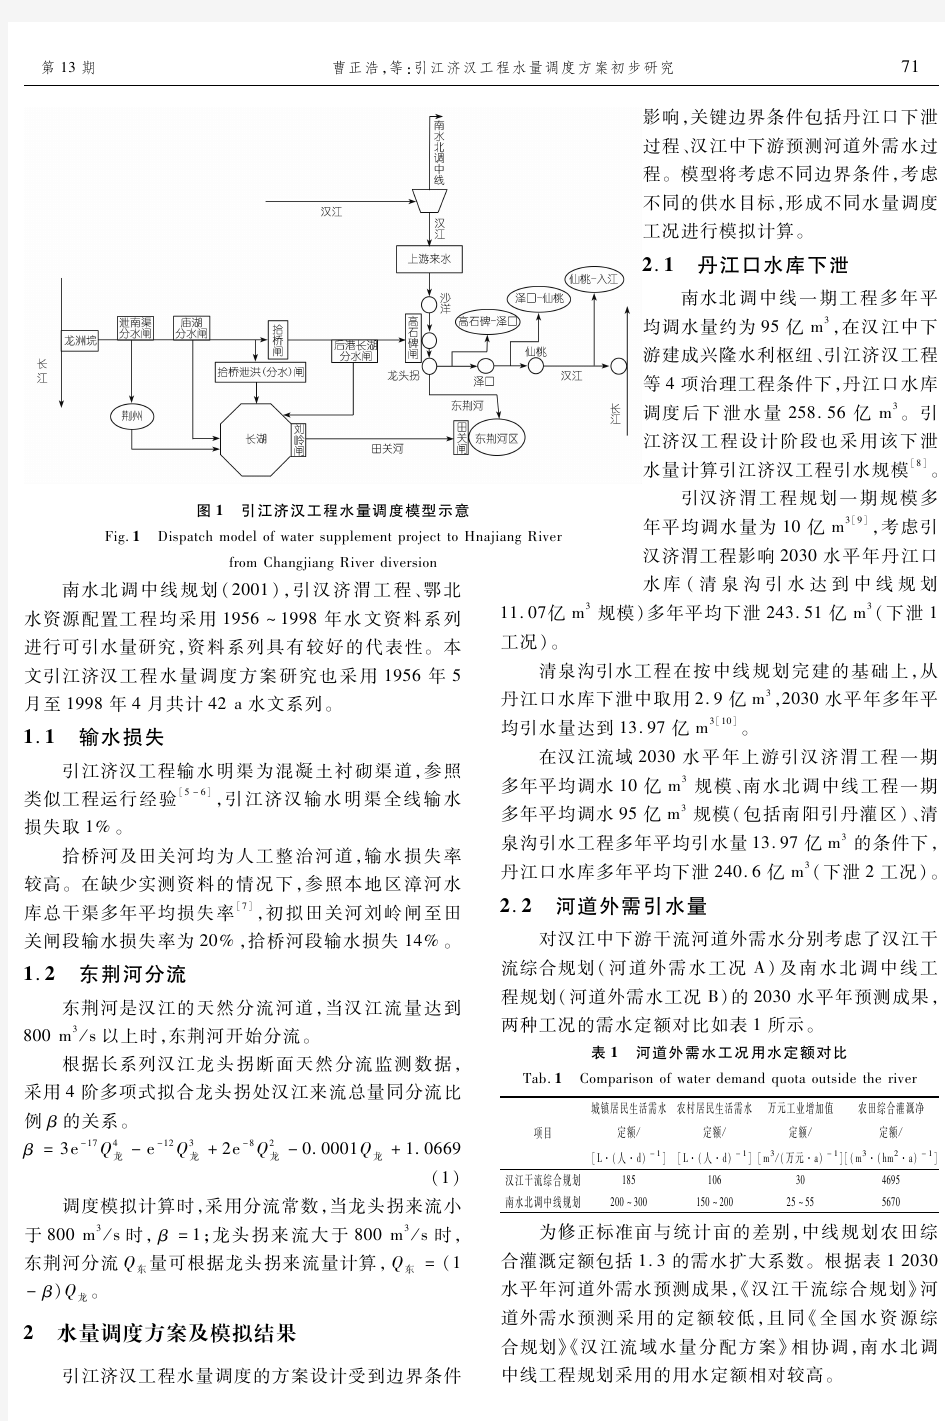 引江济汉工程水量调度方案初步研究